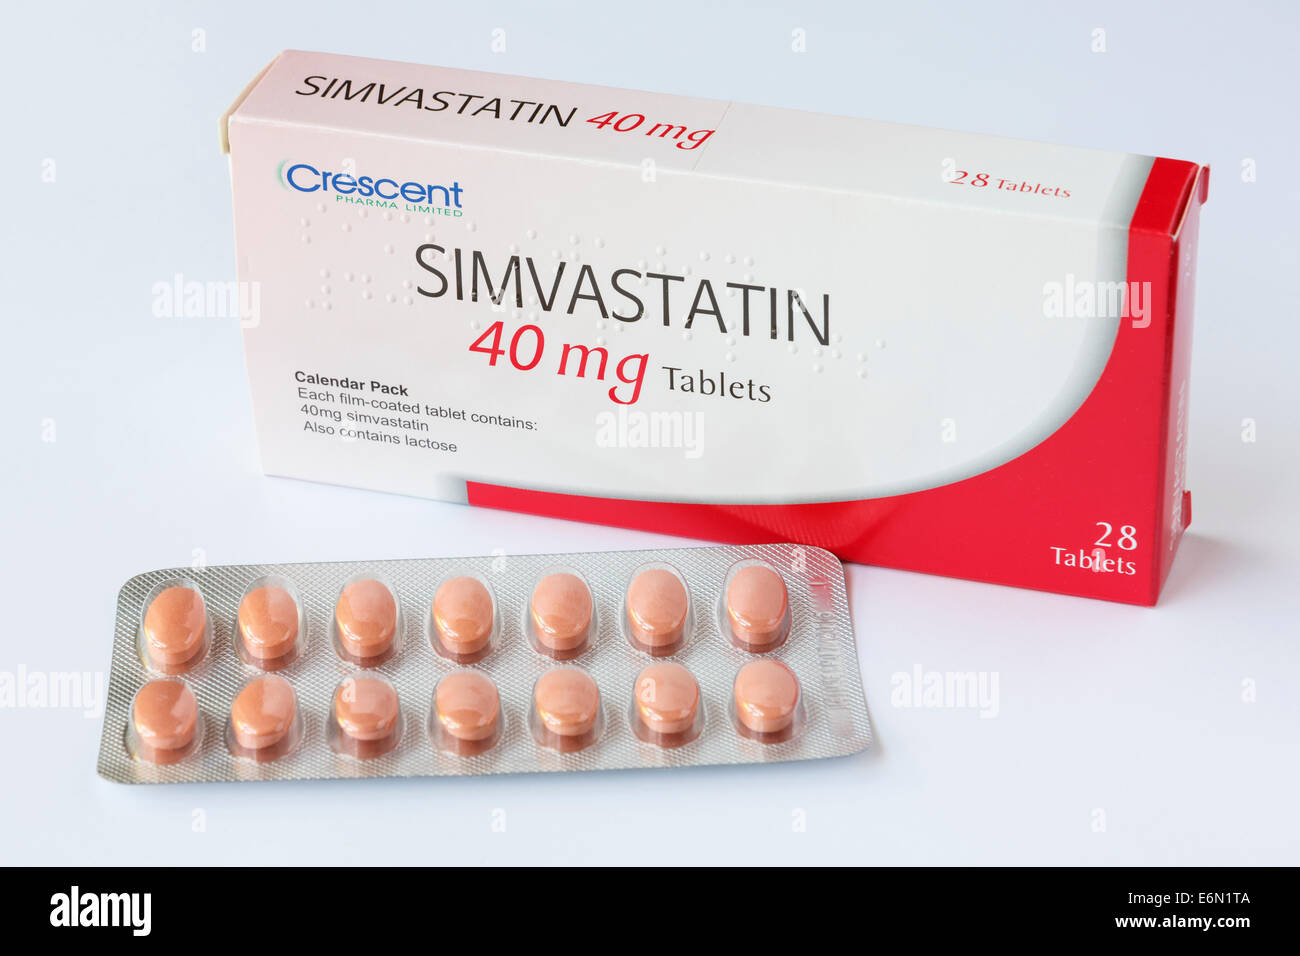 Crescent Pharma Limited Simvastatin 40 mg Tabletten in einer Folie  Blisterpackung mit Box für vorgeschriebene Behandlung und Reduzierung der  hohen Cholesterin. England Großbritannien Stockfotografie - Alamy